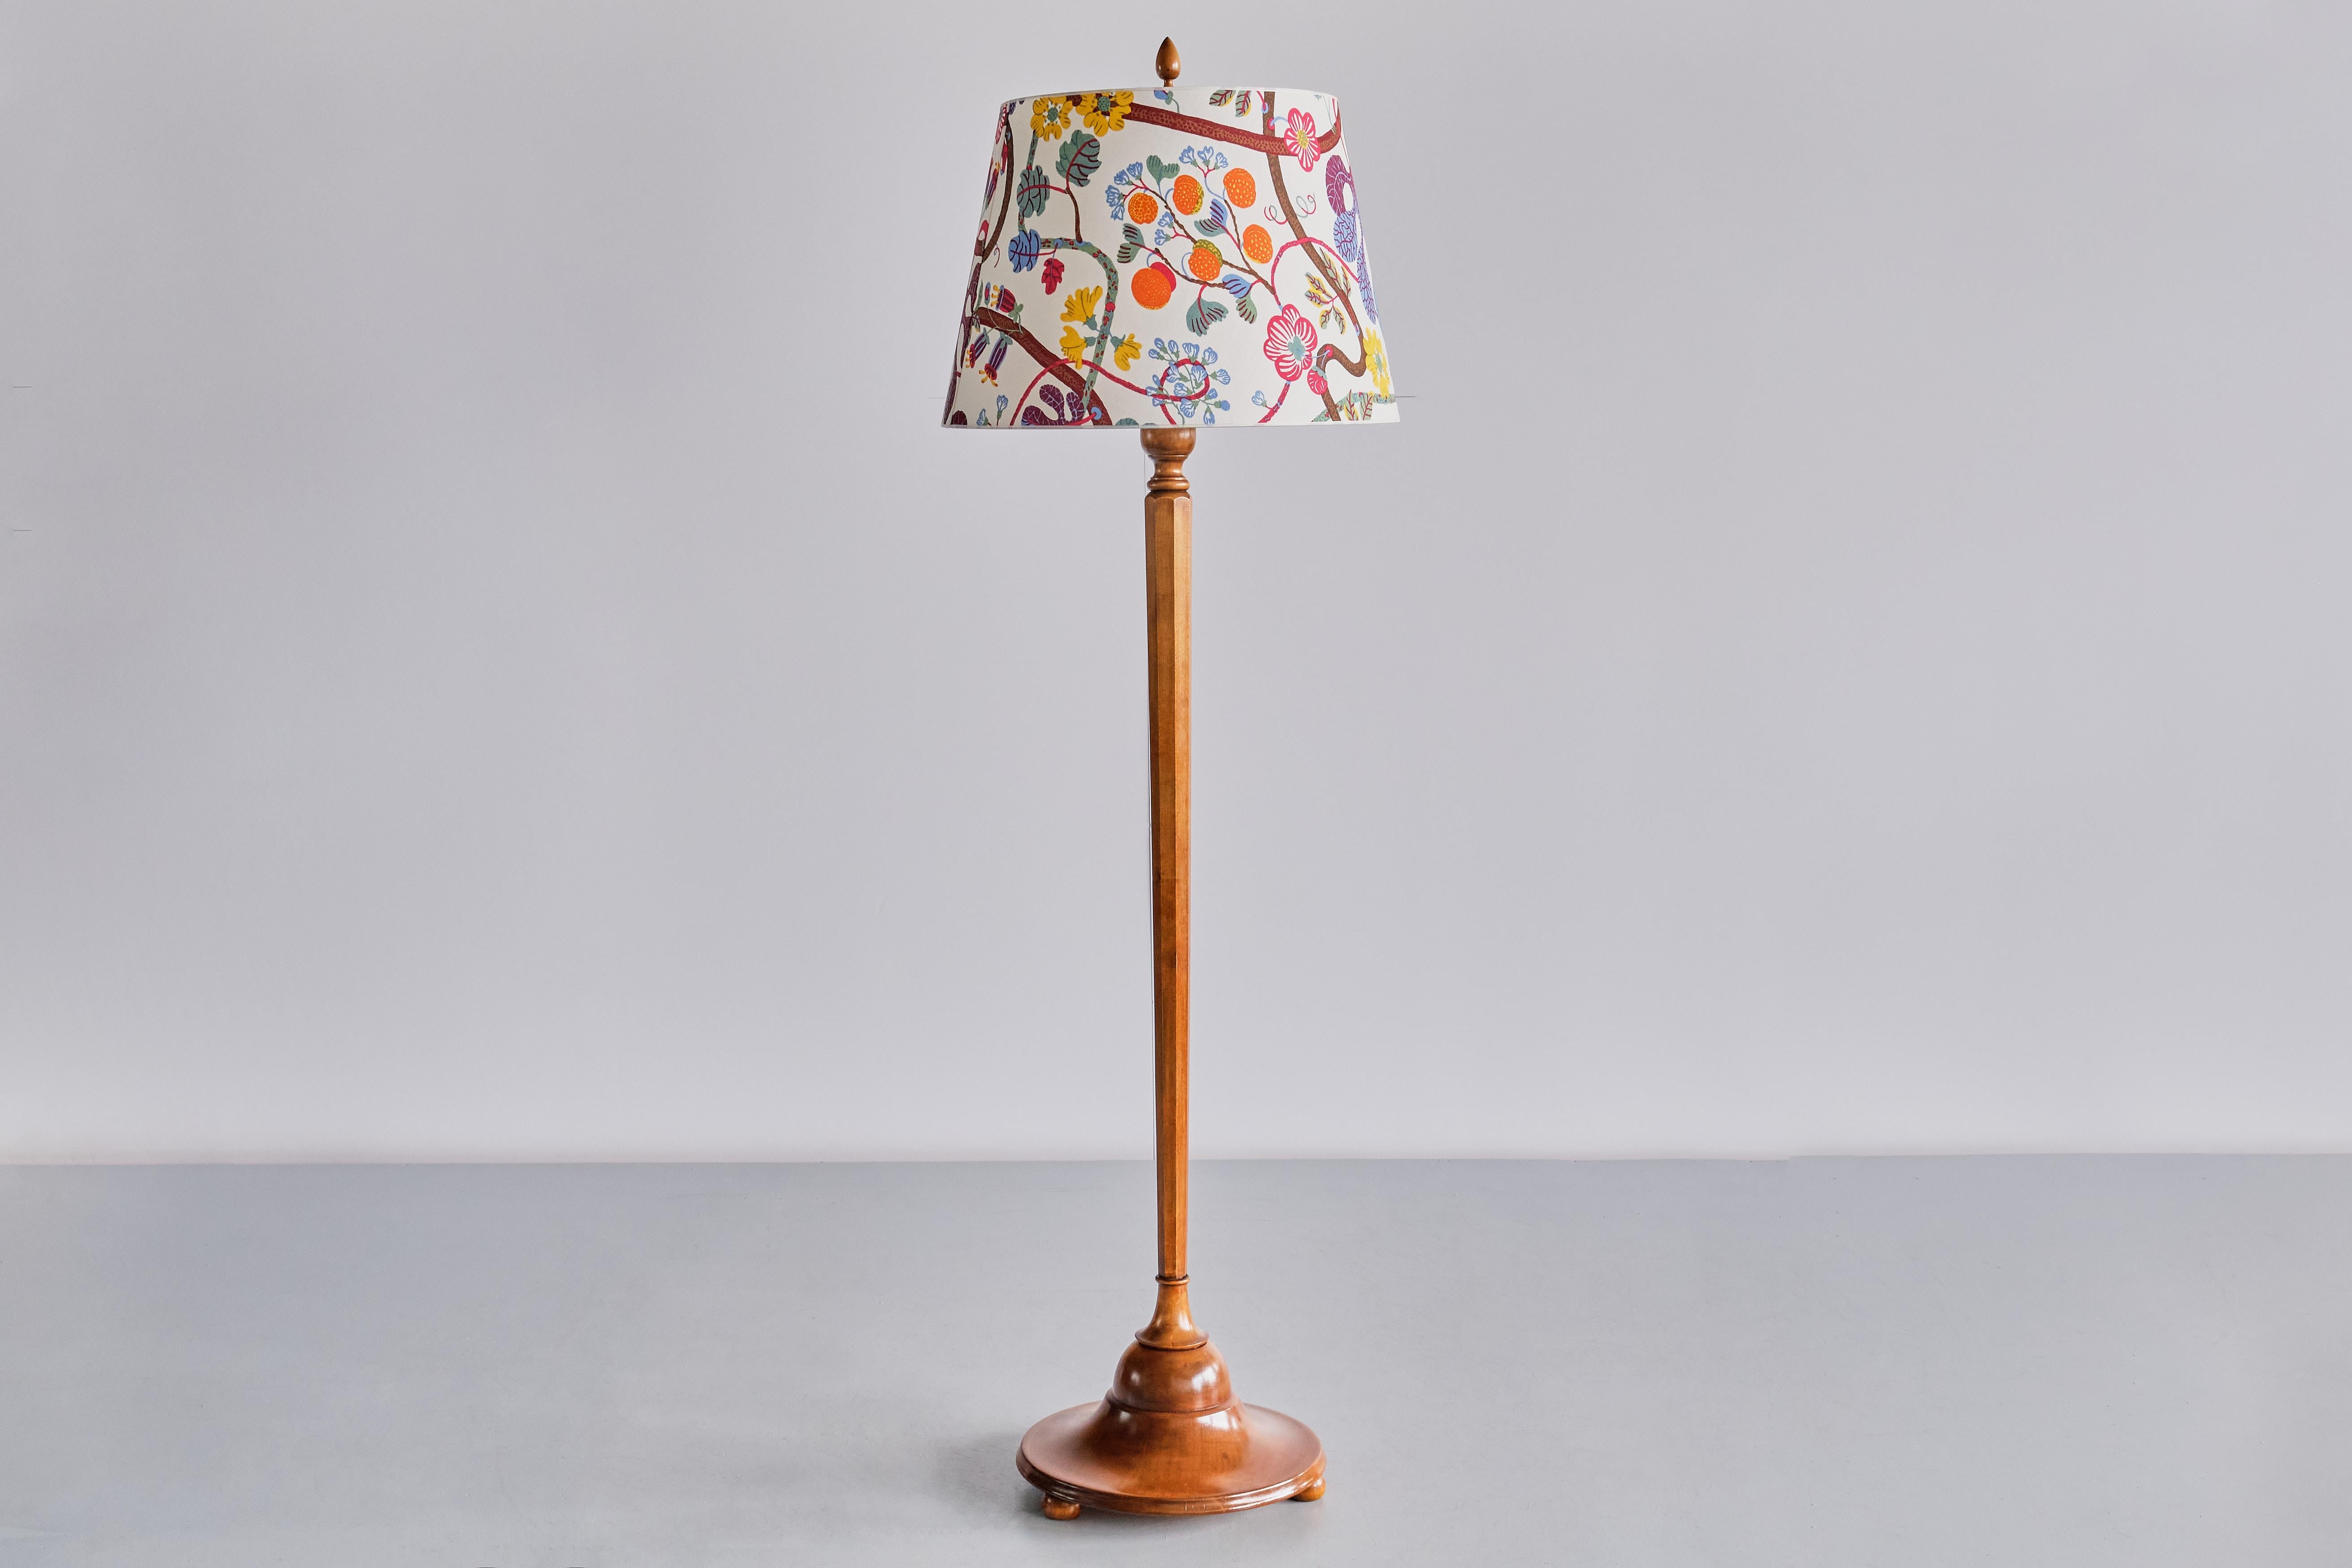 Ce lampadaire très rare a été conçu par Otto Schulz et produit par sa société Boet à Göteborg, en Suède, en 1928. Le design élégant est exemplaire du style 